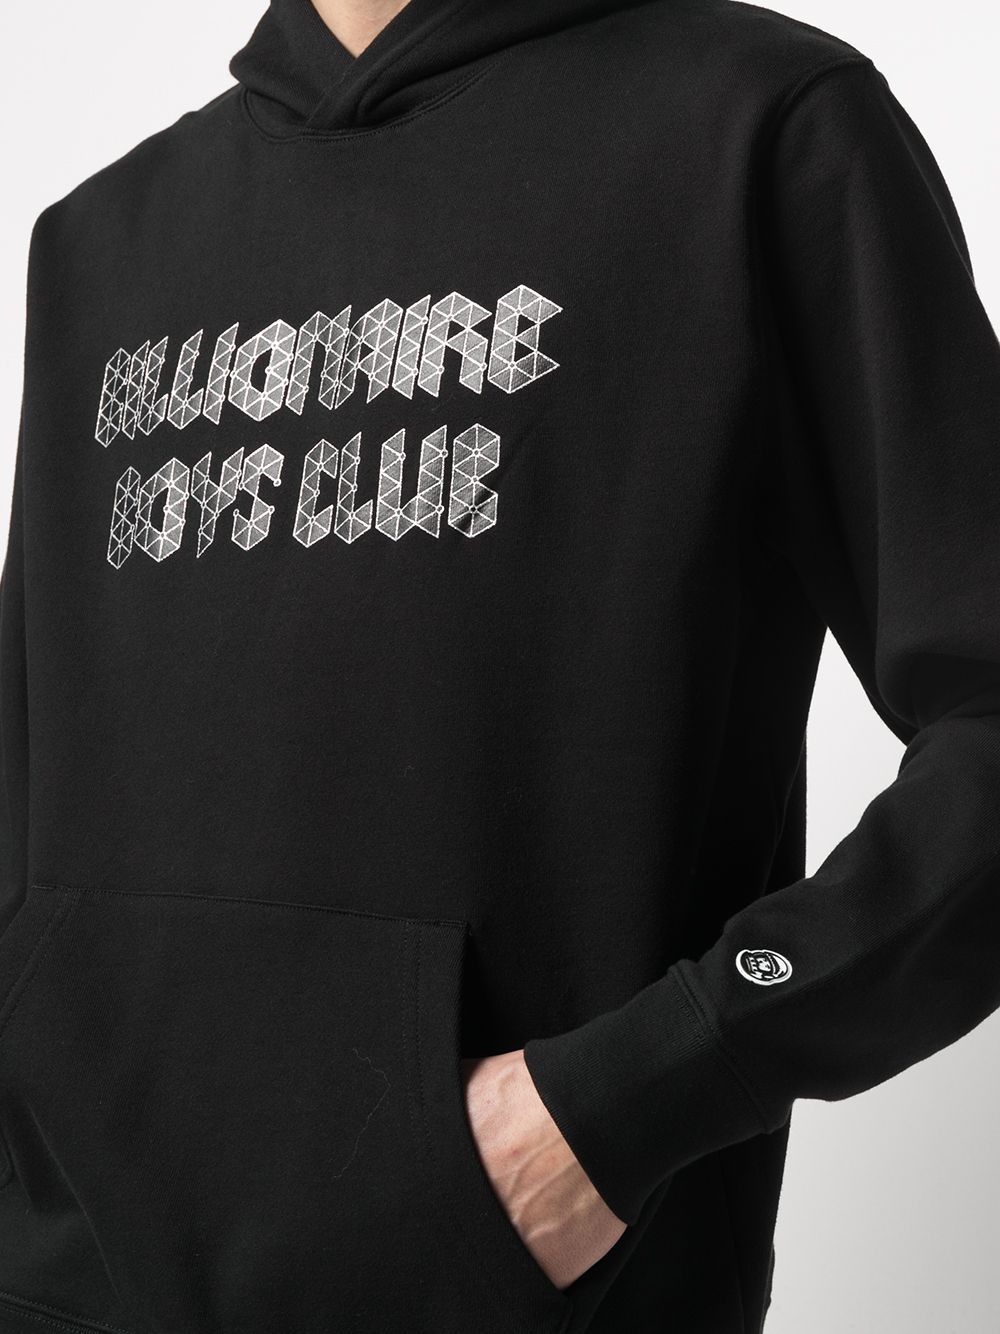 фото Billionaire boys club свитер с капюшоном и логотипом